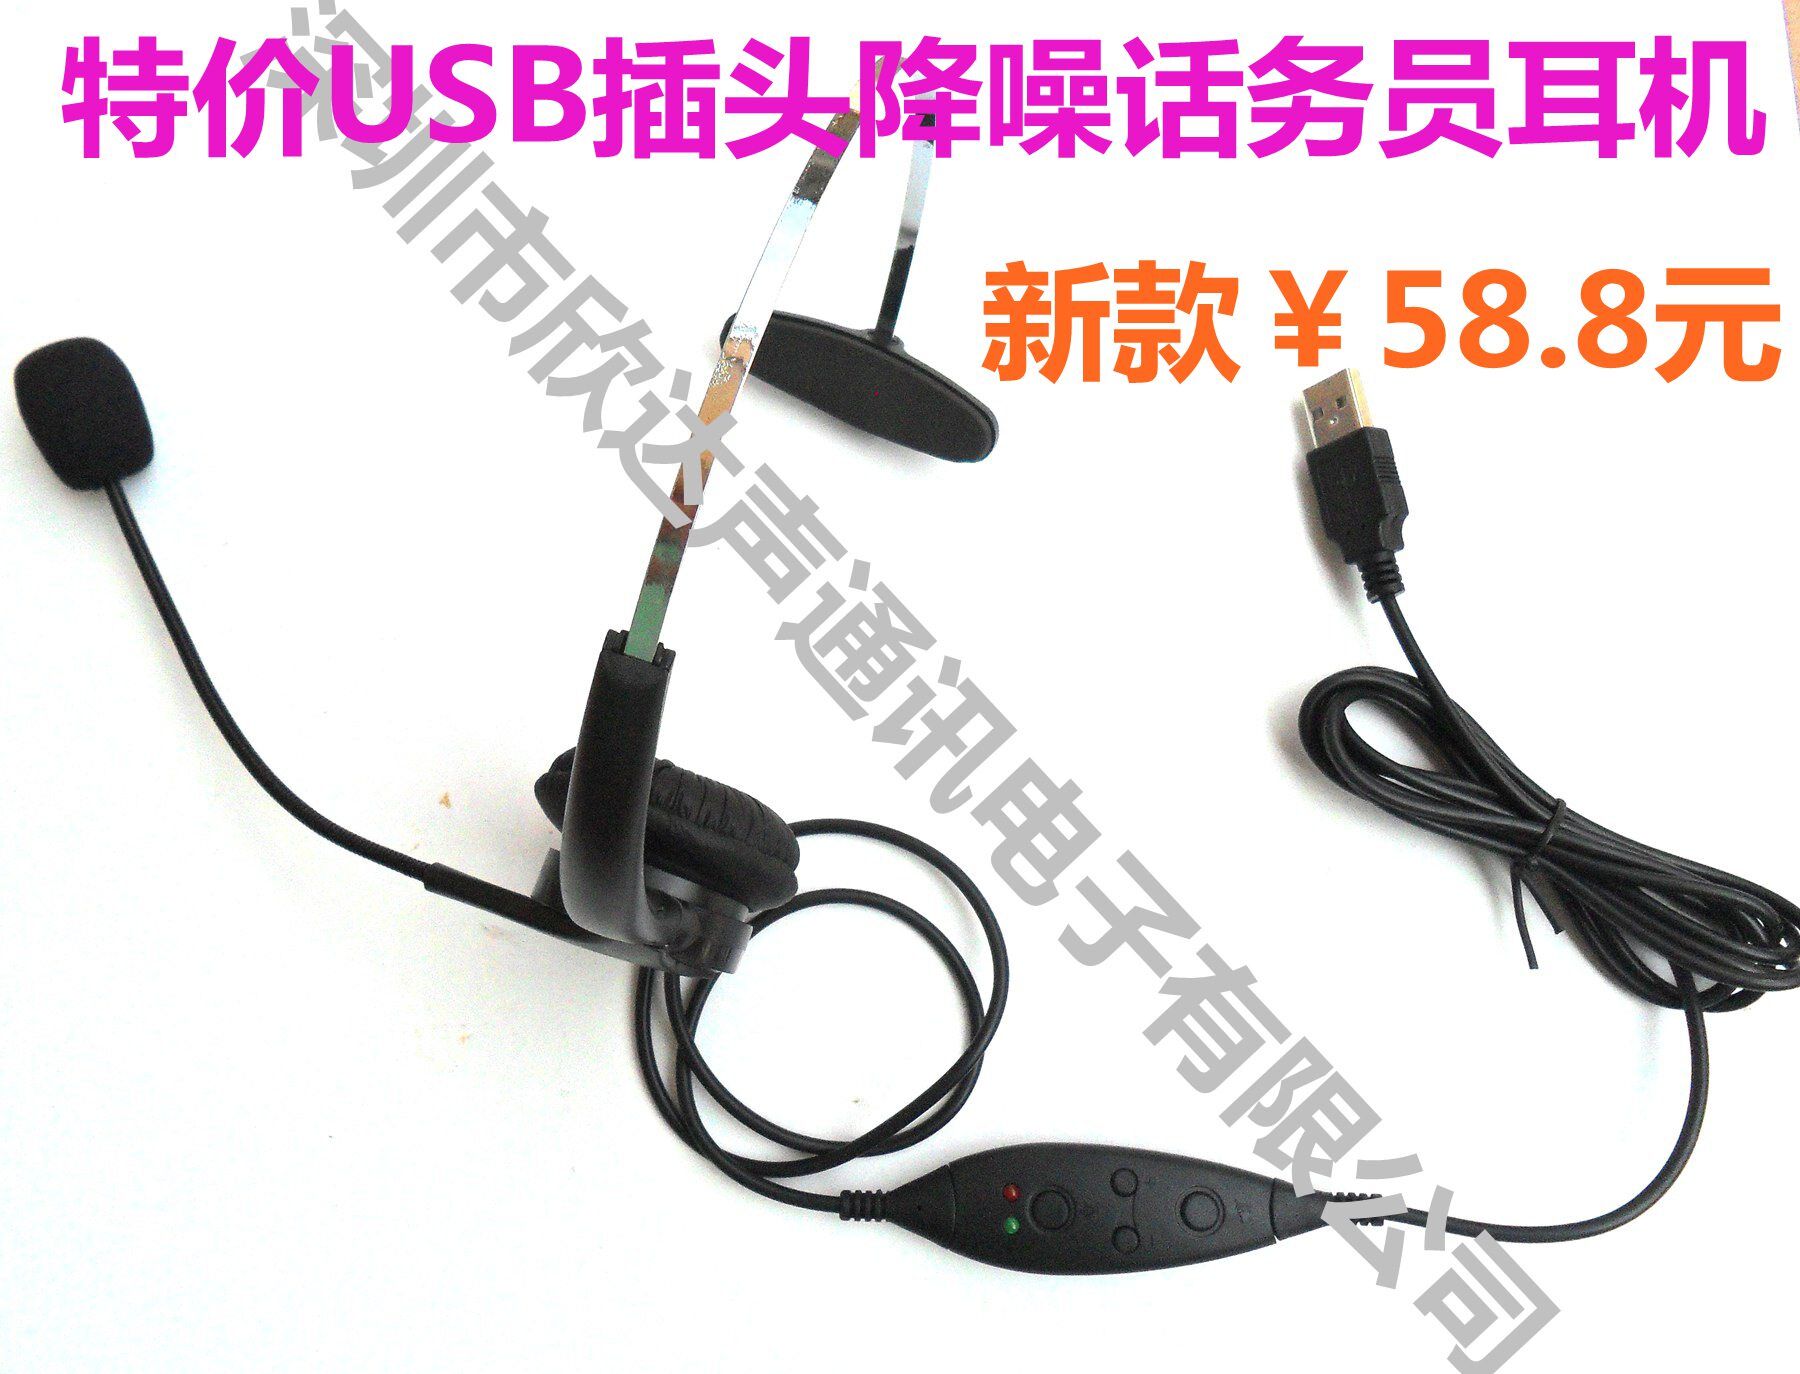 USB插头话务耳机电话机耳机电脑语音耳麦话务员耳麦话务式耳机